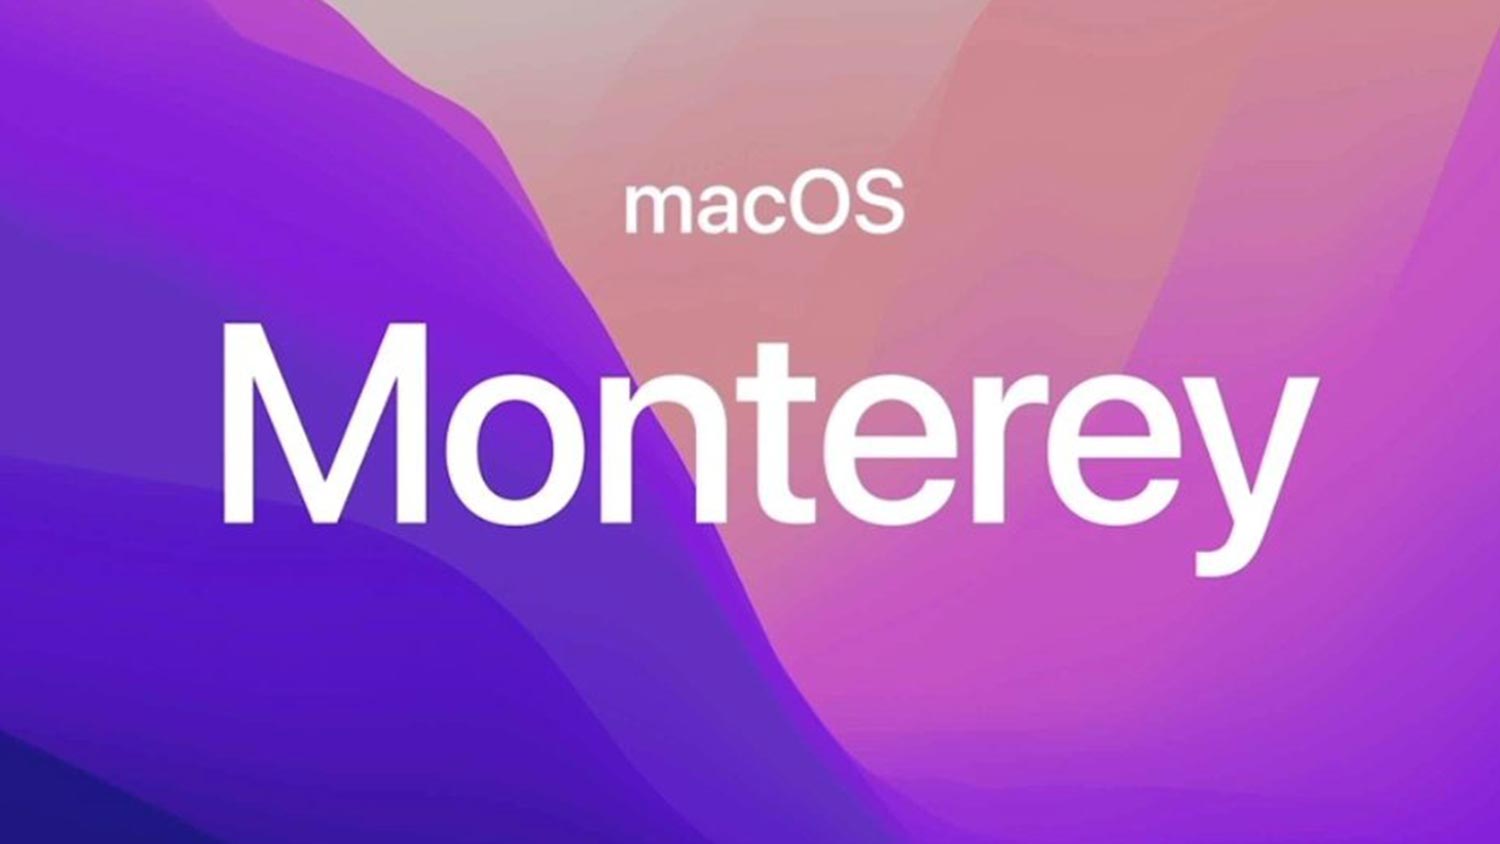 Ciri Memadam Data Peribadi macOS Monteray Adalah Mirip iPhone Yang Kurang Melecehkan